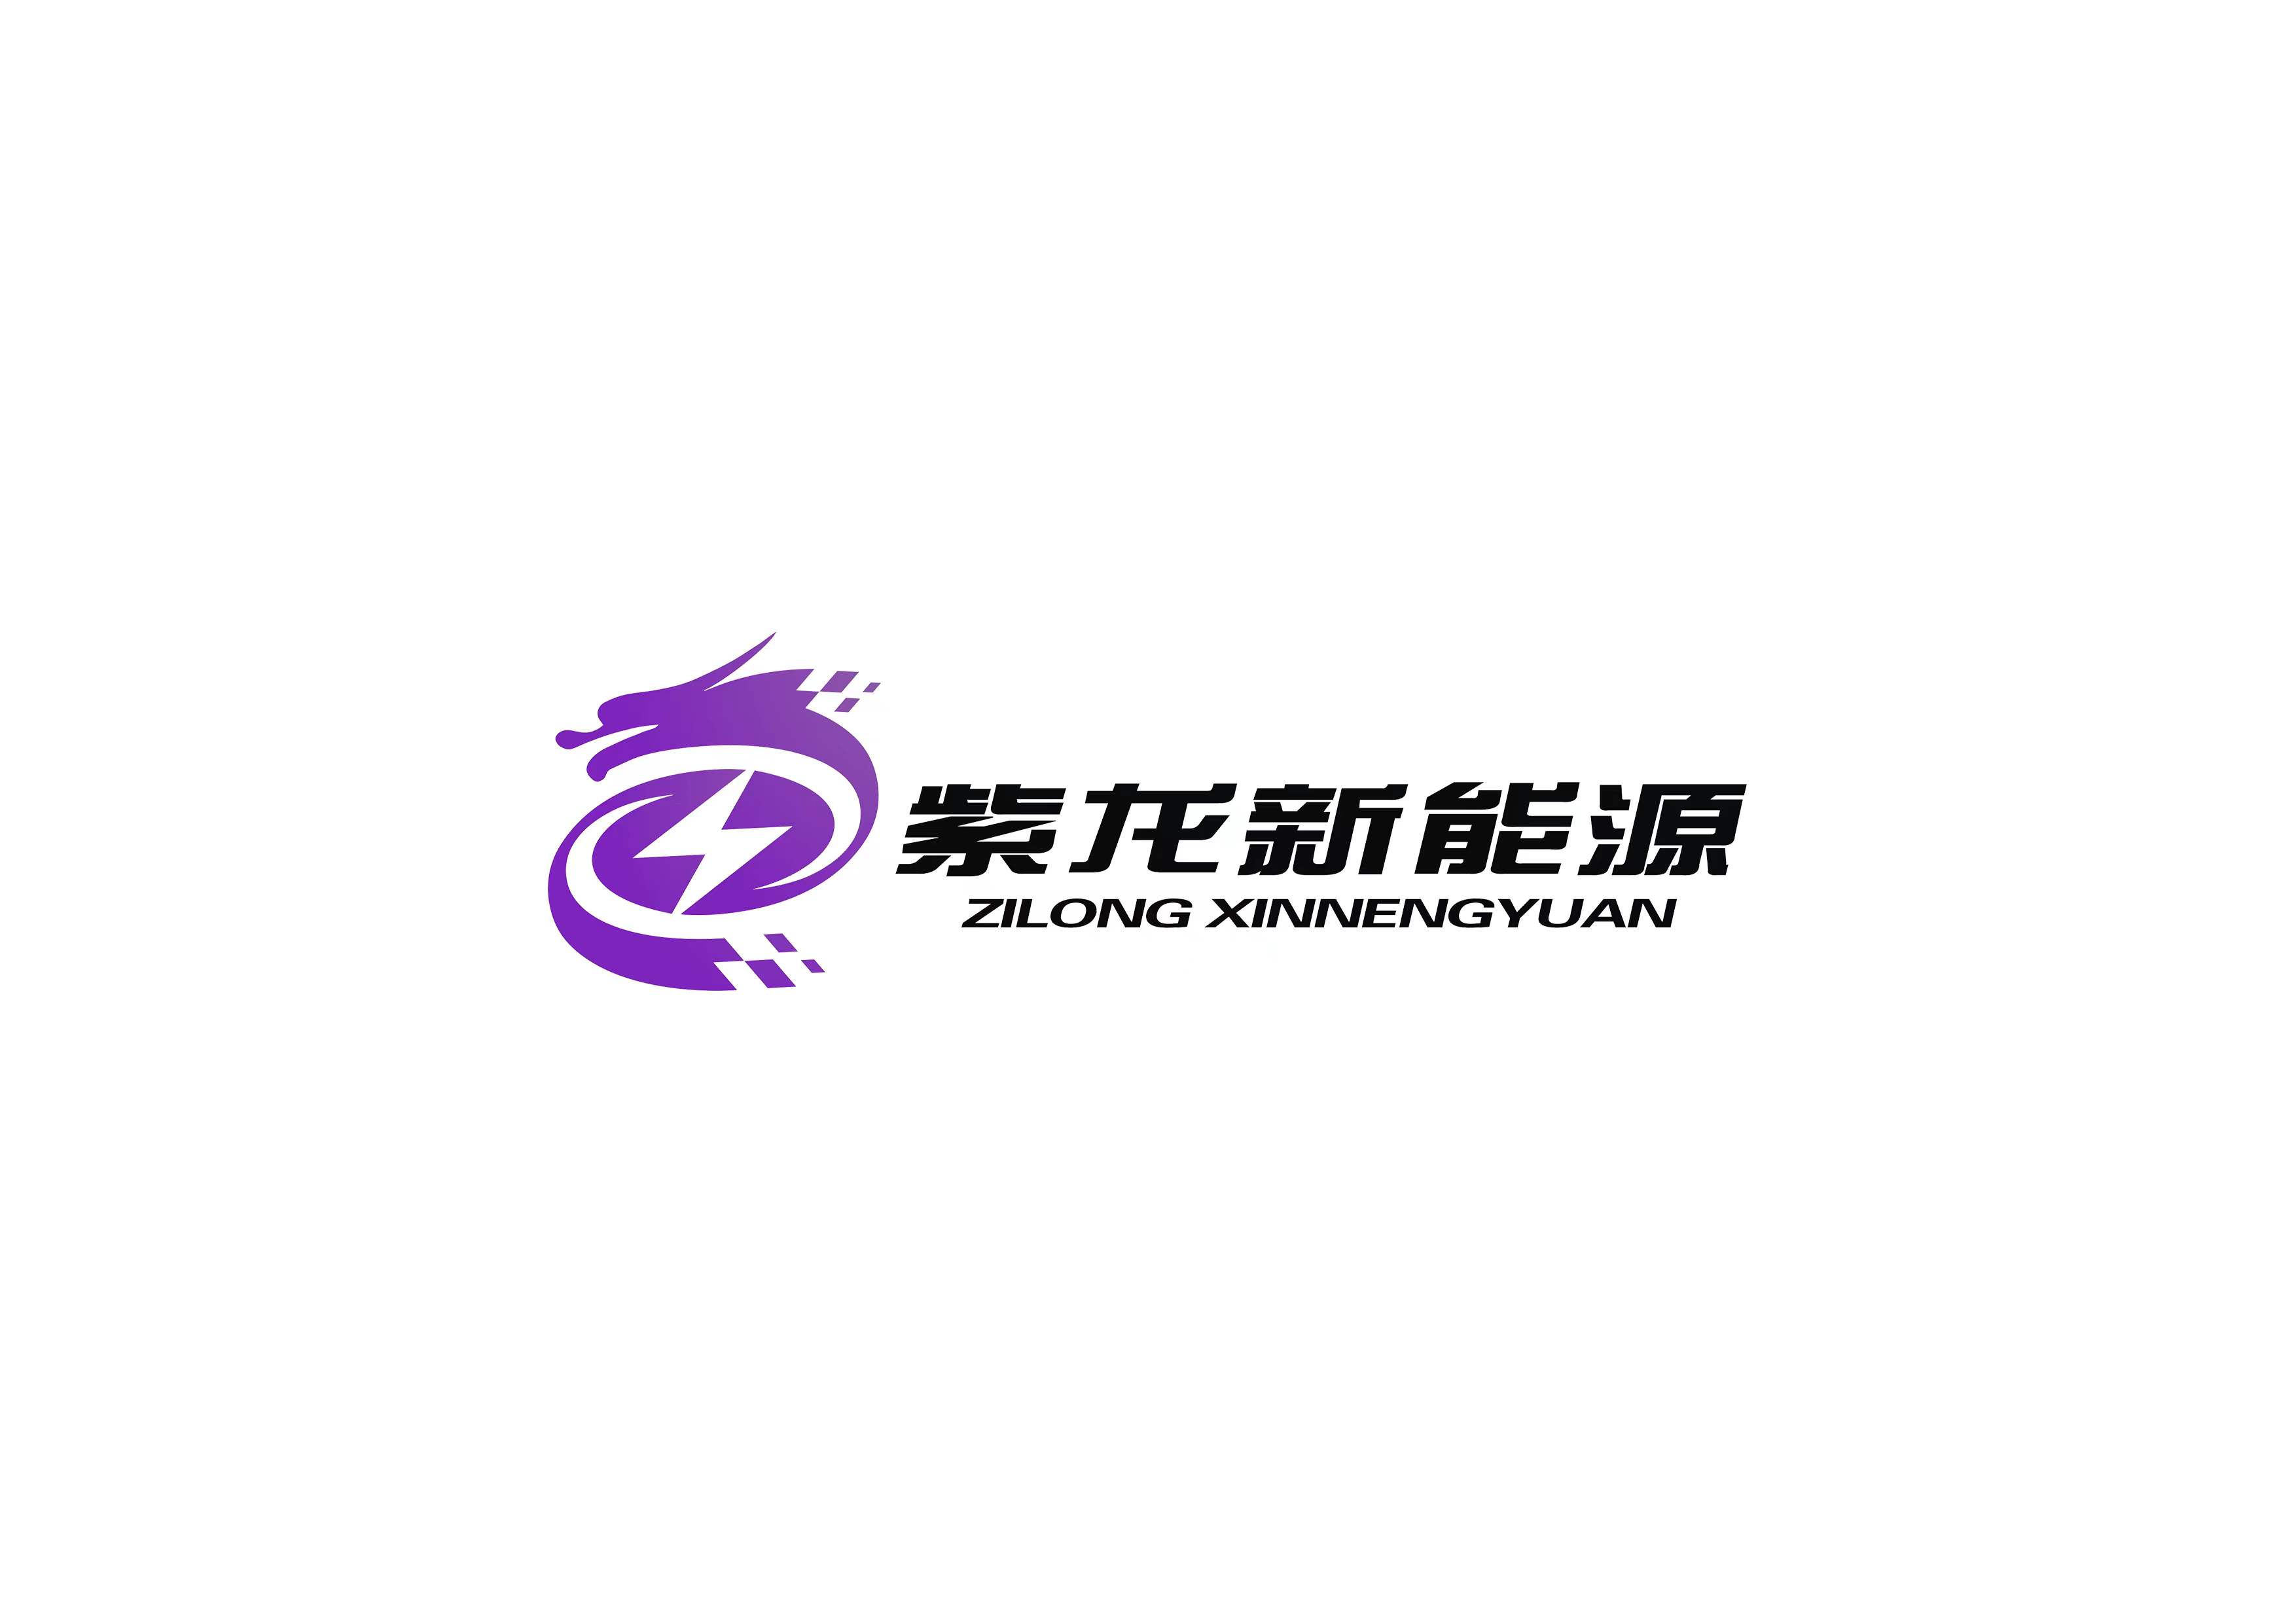 上海紫龍新能源有限公司